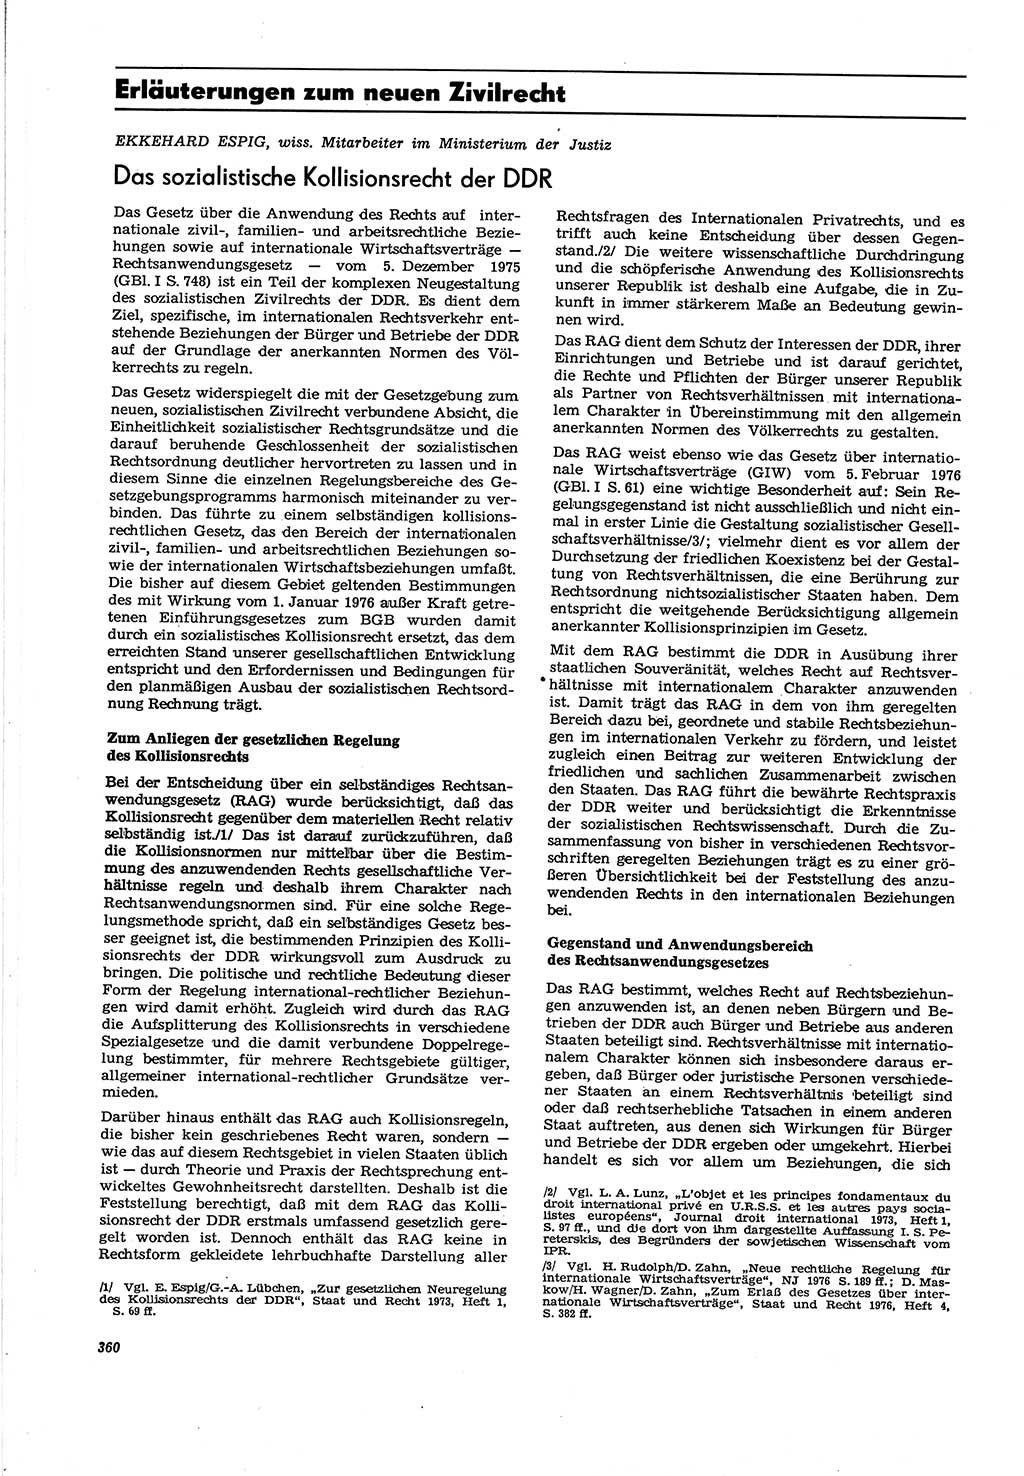 Neue Justiz (NJ), Zeitschrift für Recht und Rechtswissenschaft [Deutsche Demokratische Republik (DDR)], 30. Jahrgang 1976, Seite 360 (NJ DDR 1976, S. 360)